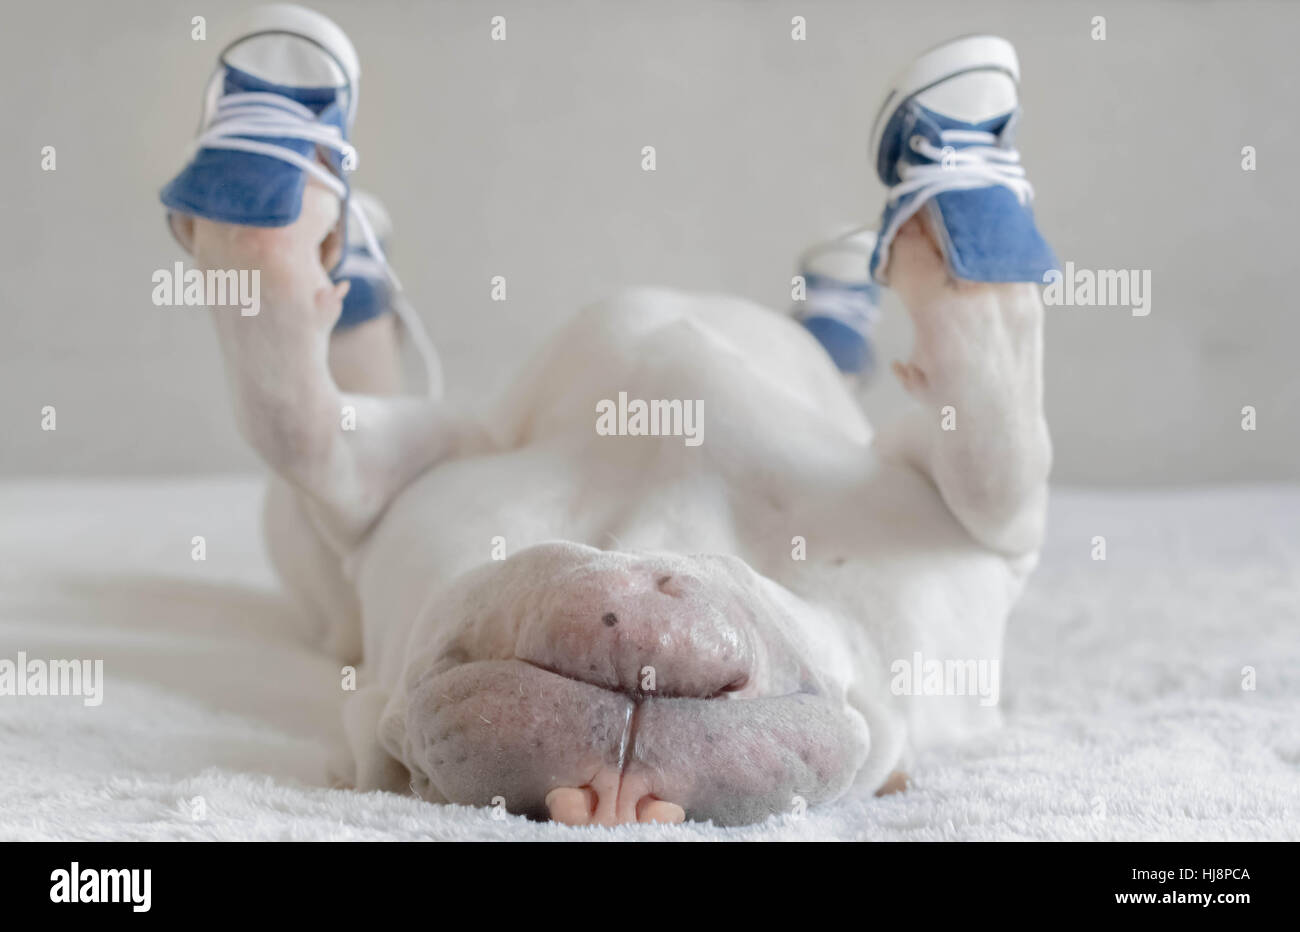 Shar Pei dog wearing sneakers et couché sur le dos Banque D'Images